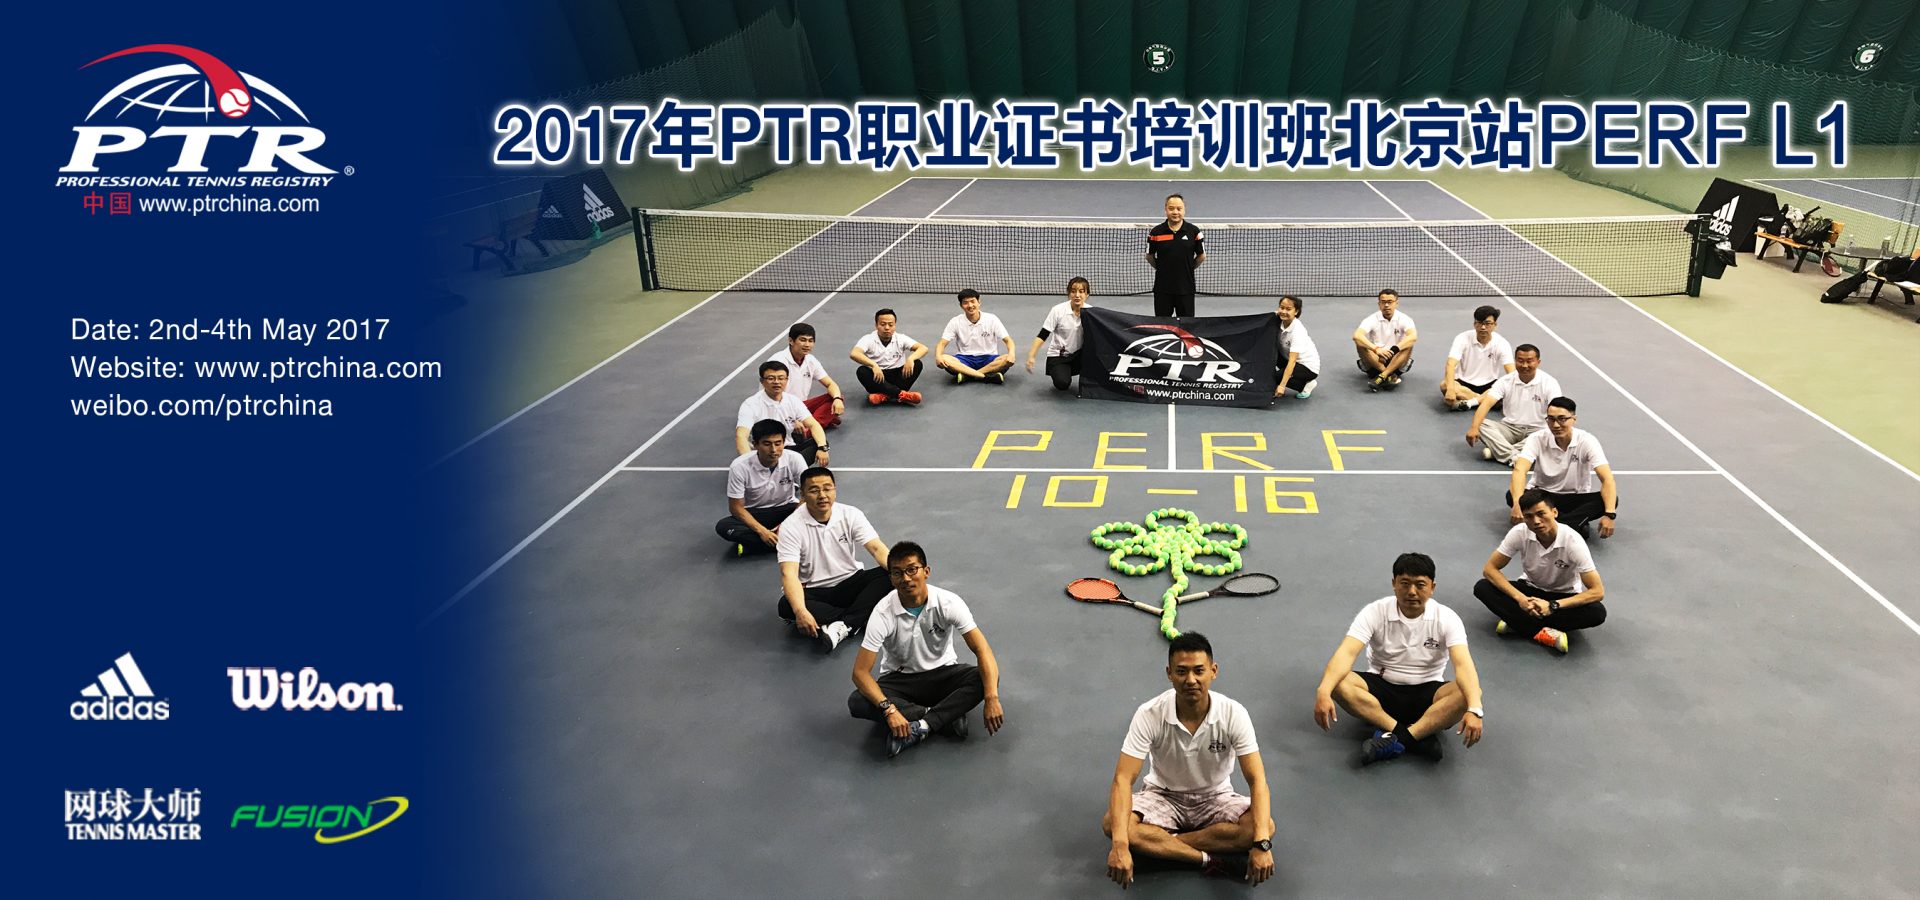 北京站PERF培训班圆满结束!